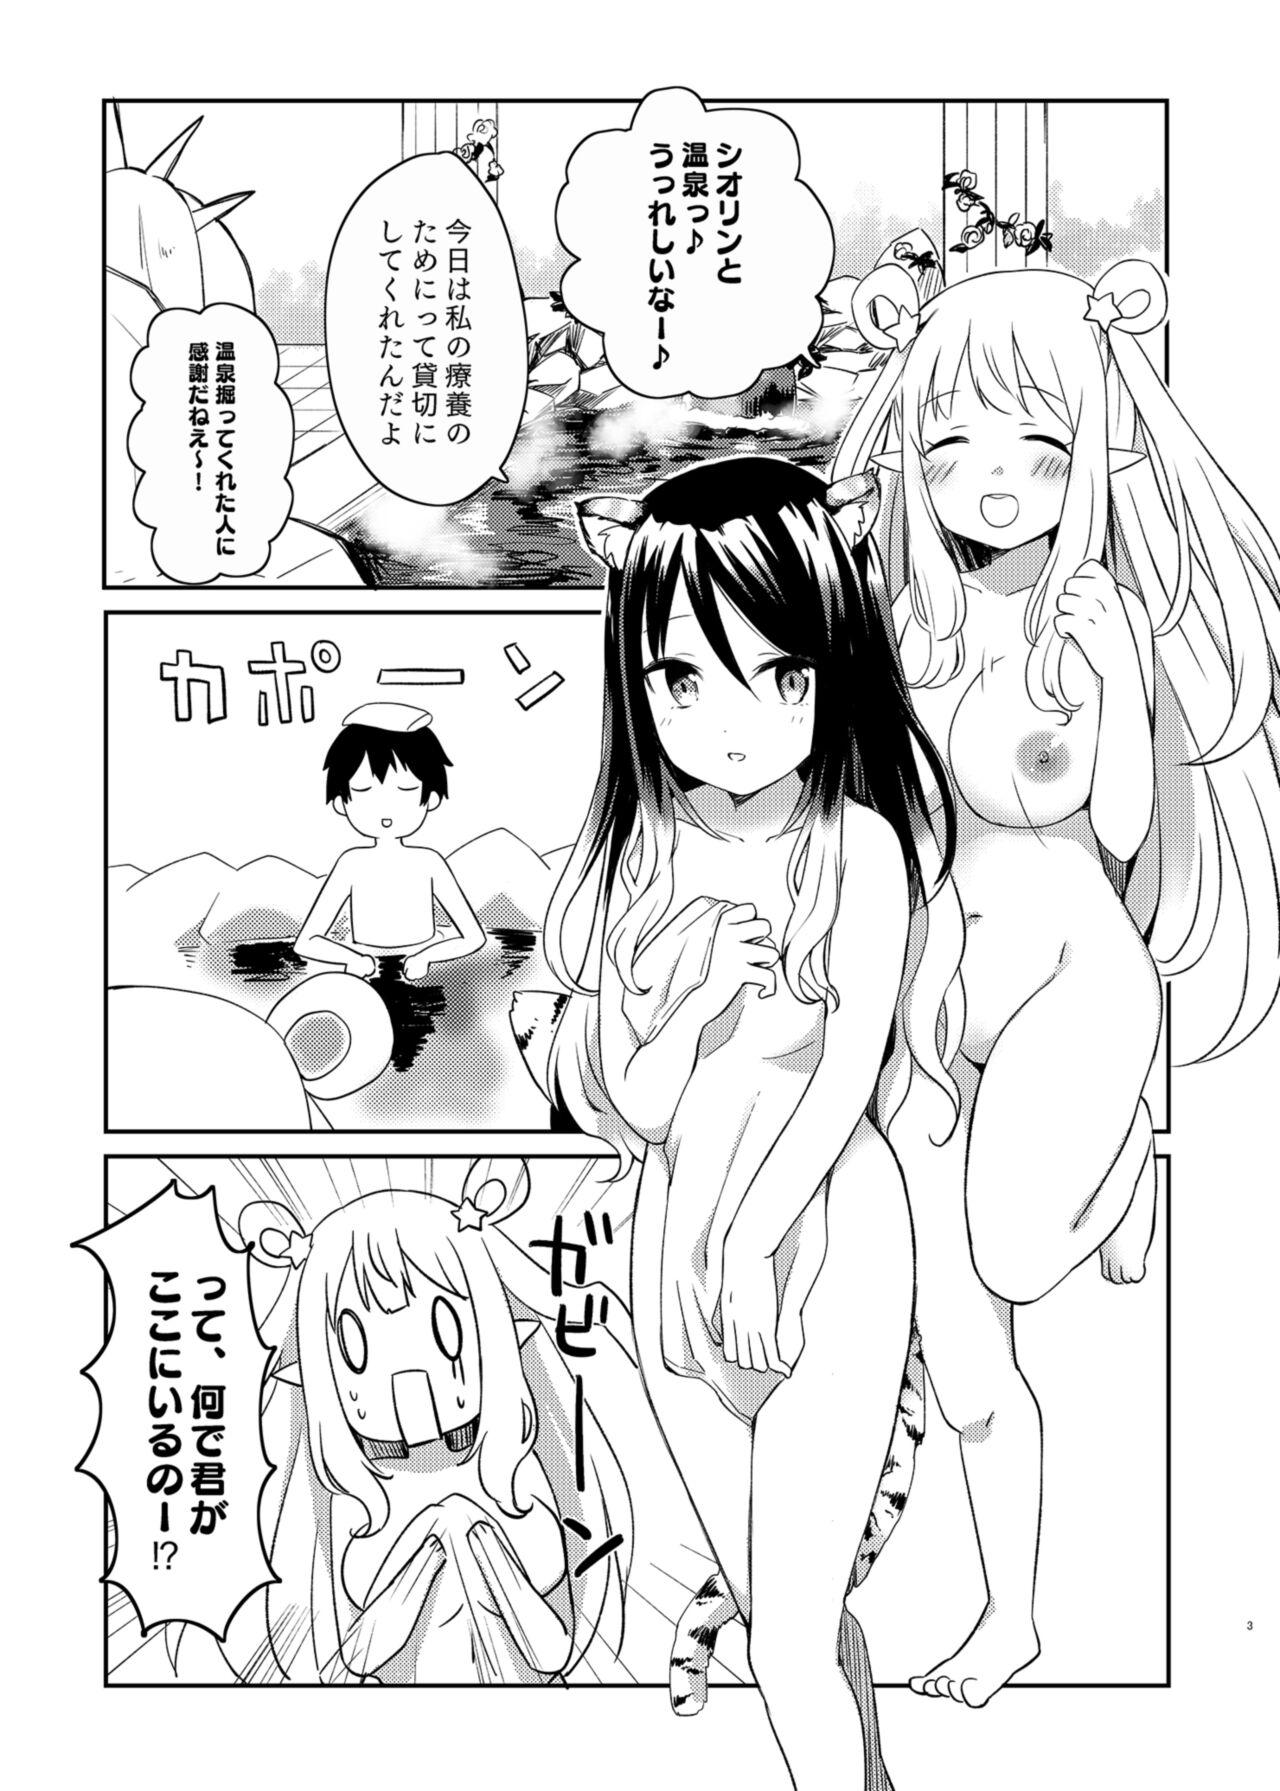 Fuck Porn Hatsune to Shiori no Yukemuri Daisakusen - Princess connect Sucking Cock - Page 3